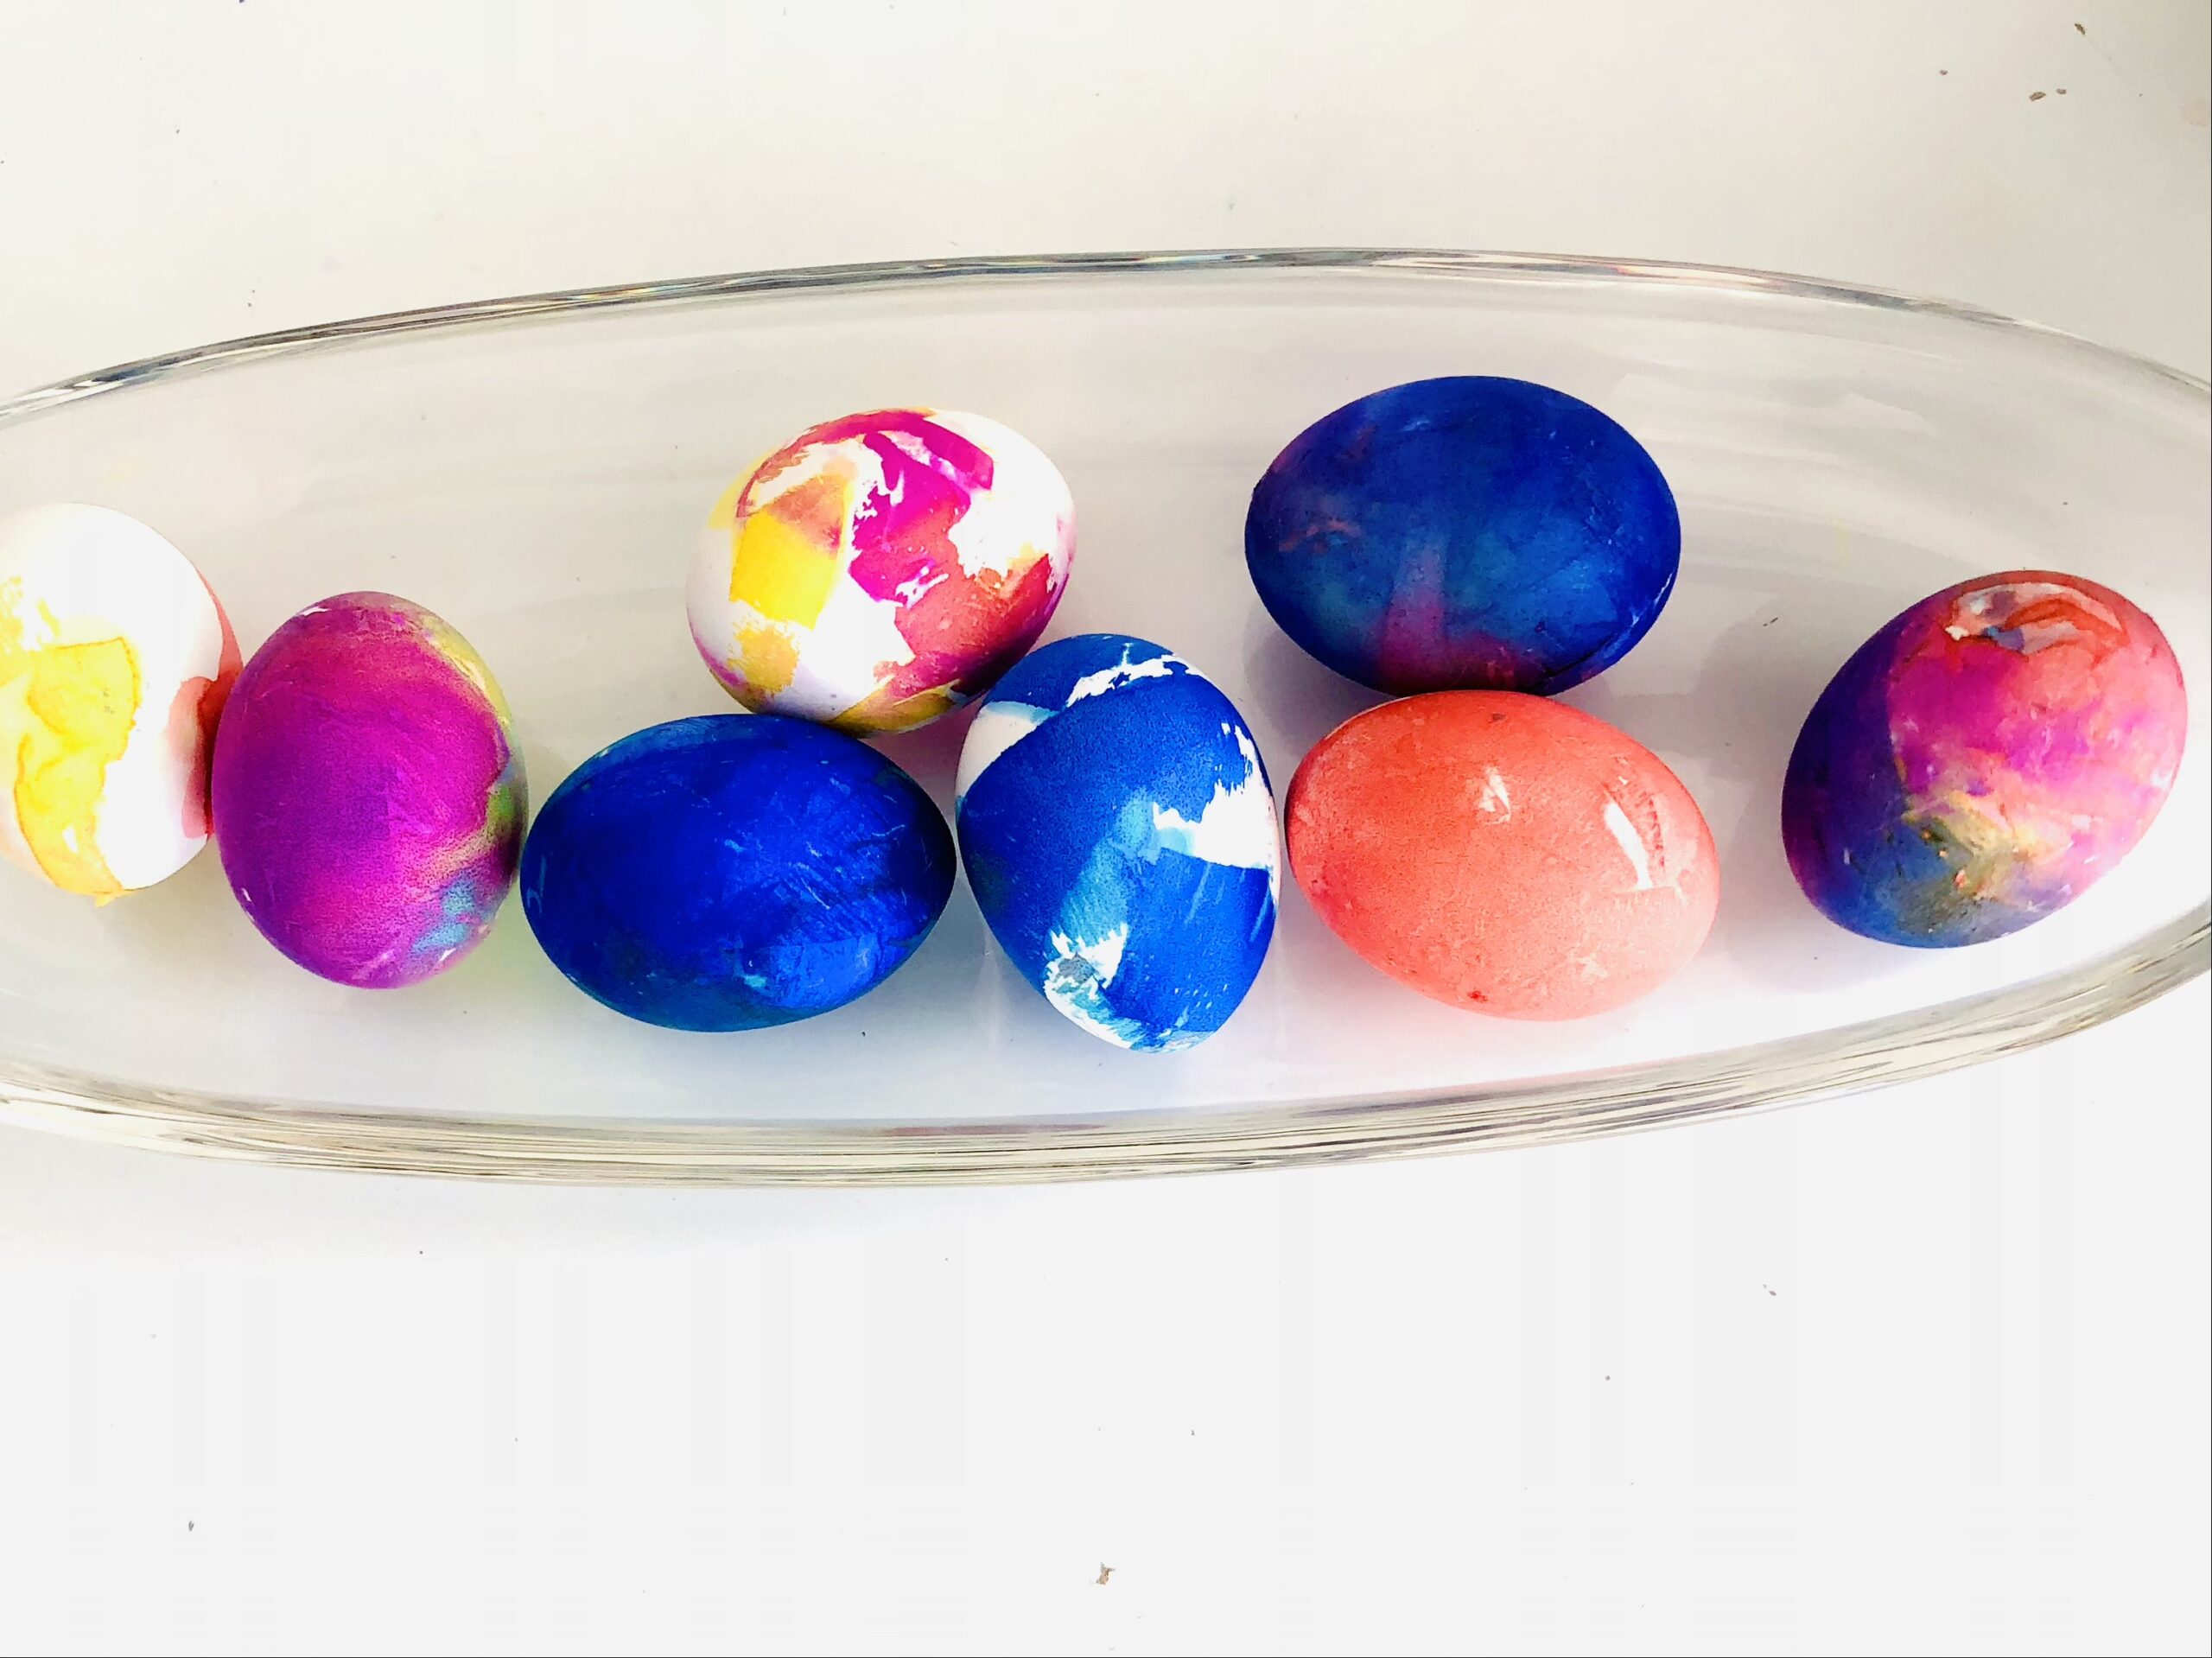 Bild zum Schritt 12 für das Bastel- und DIY-Abenteuer für Kinder: 'Legt euch abschließend die Eier in eine Schale.'